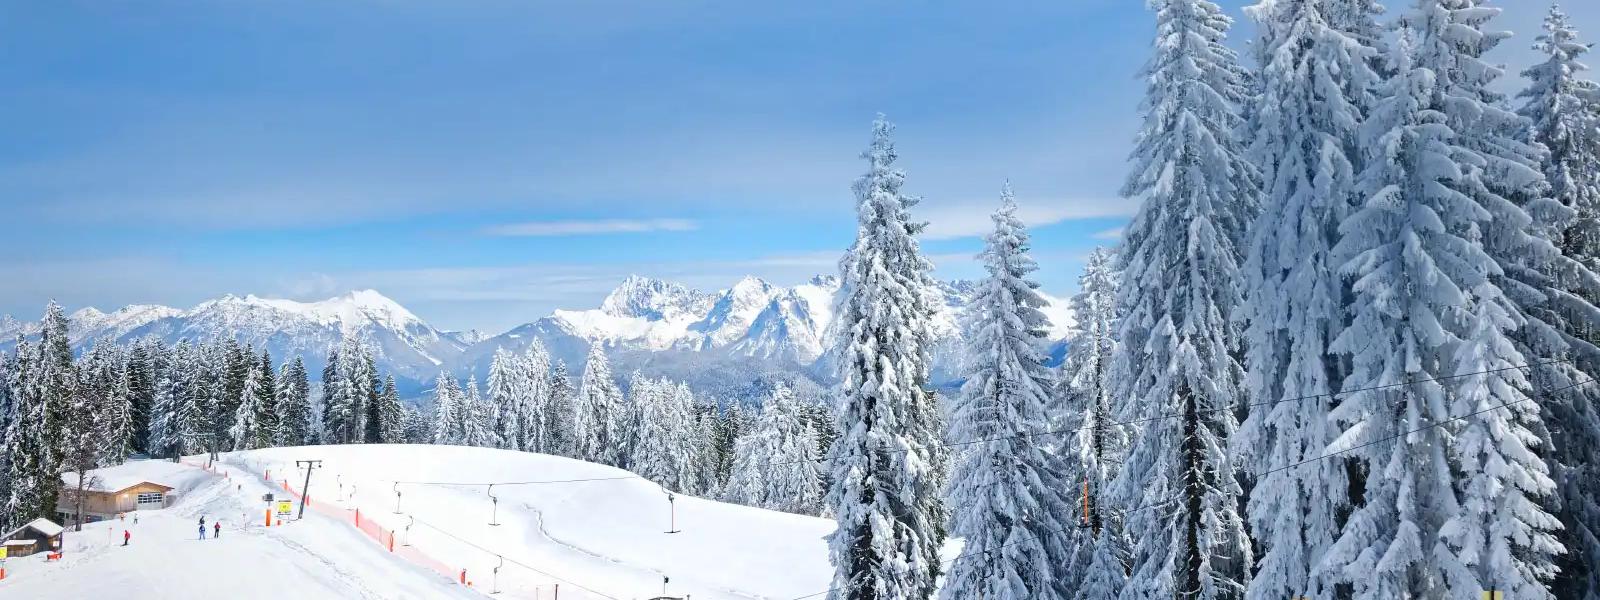 Ferienwohnungen und Ferienhäuser für Skiurlaub in Frankreich - e-domizil